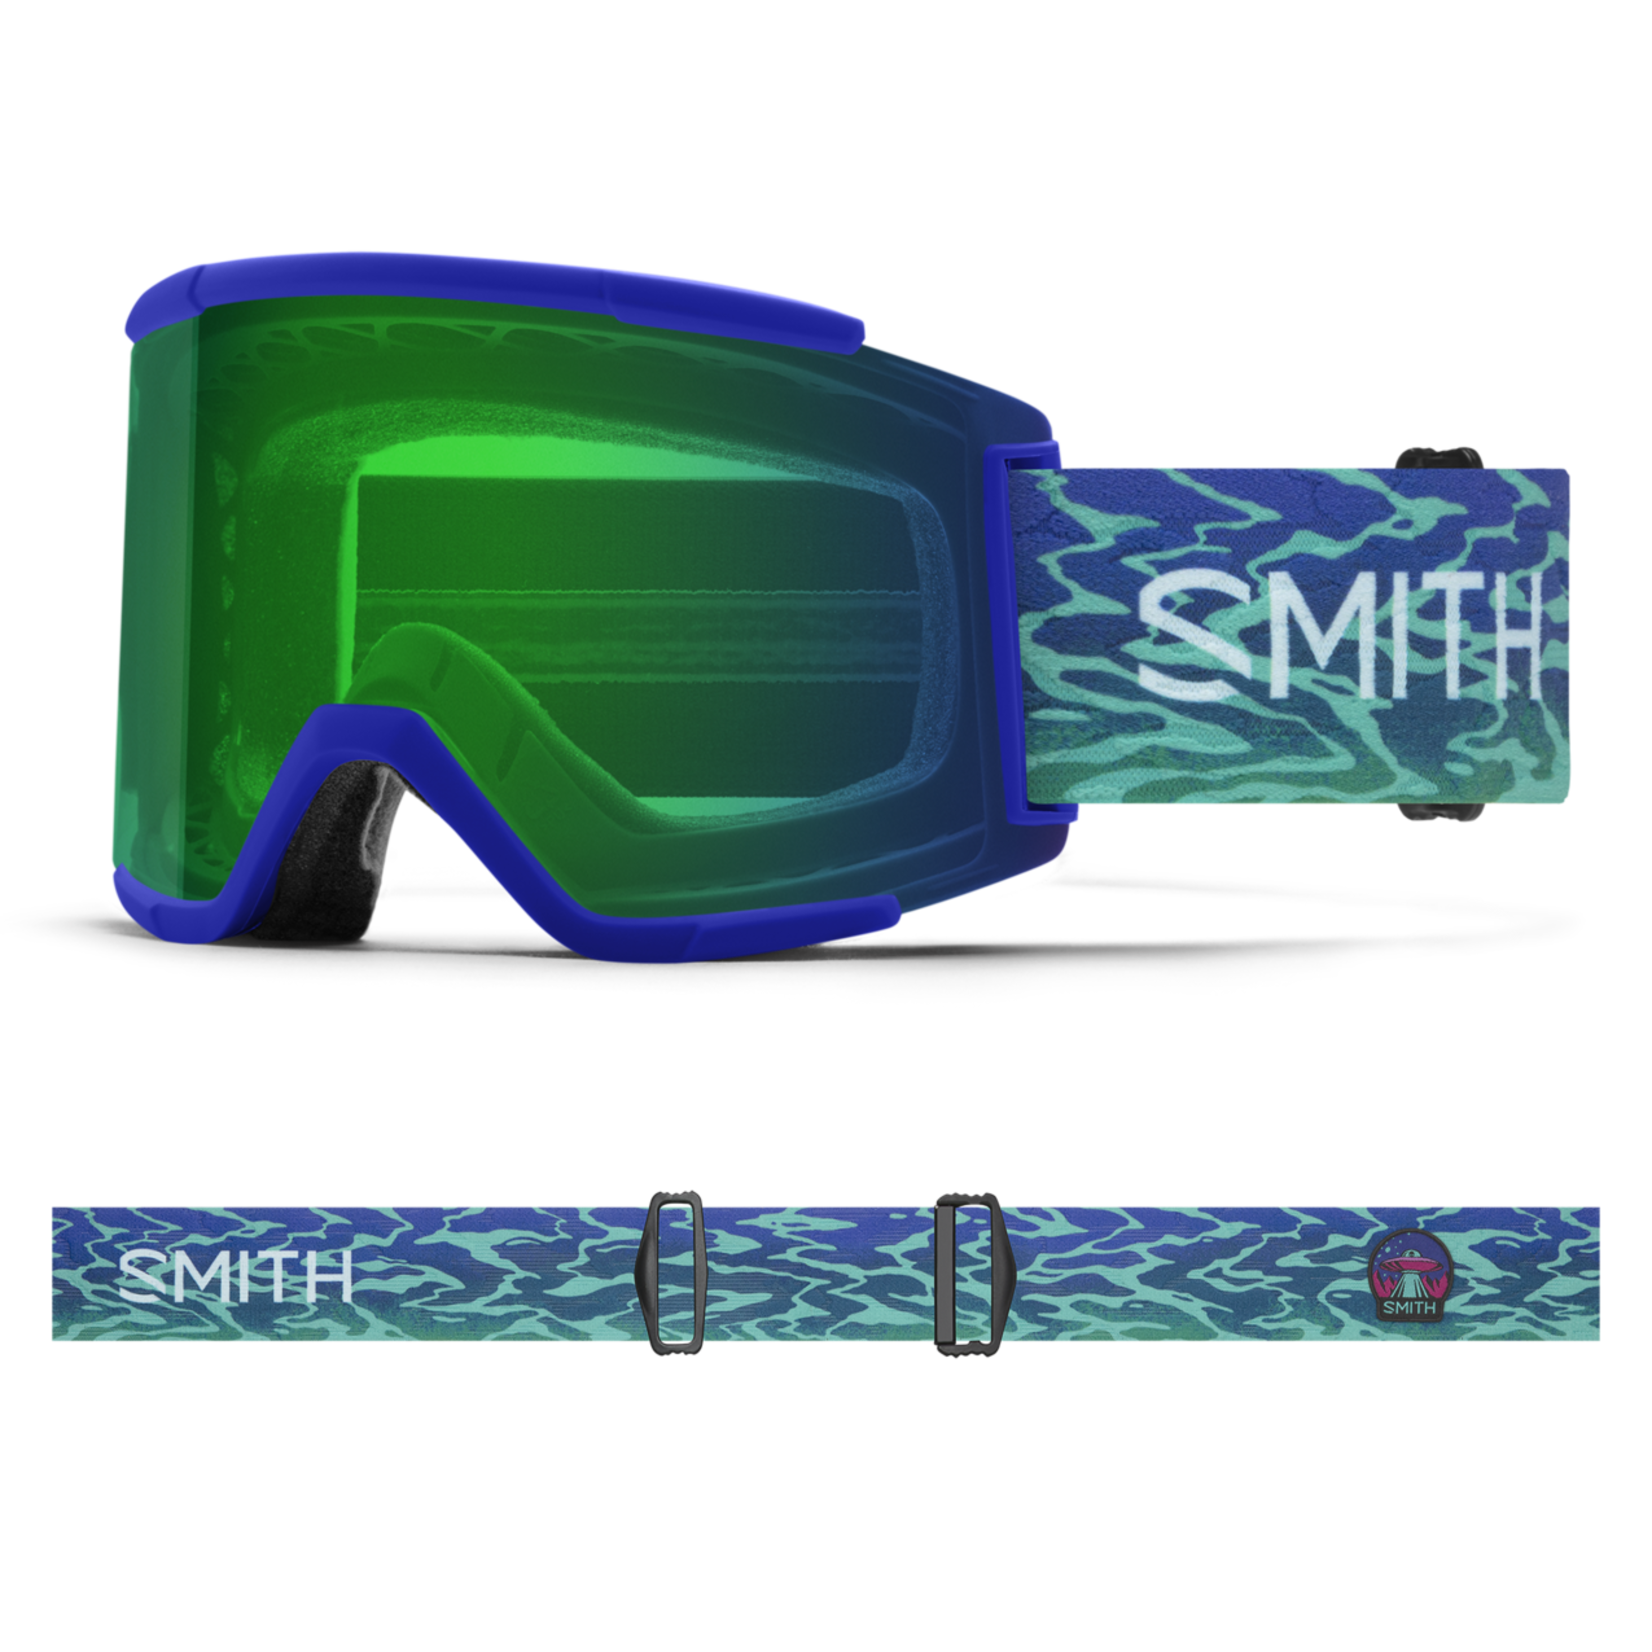 SMITH SMITH SQUAD XL